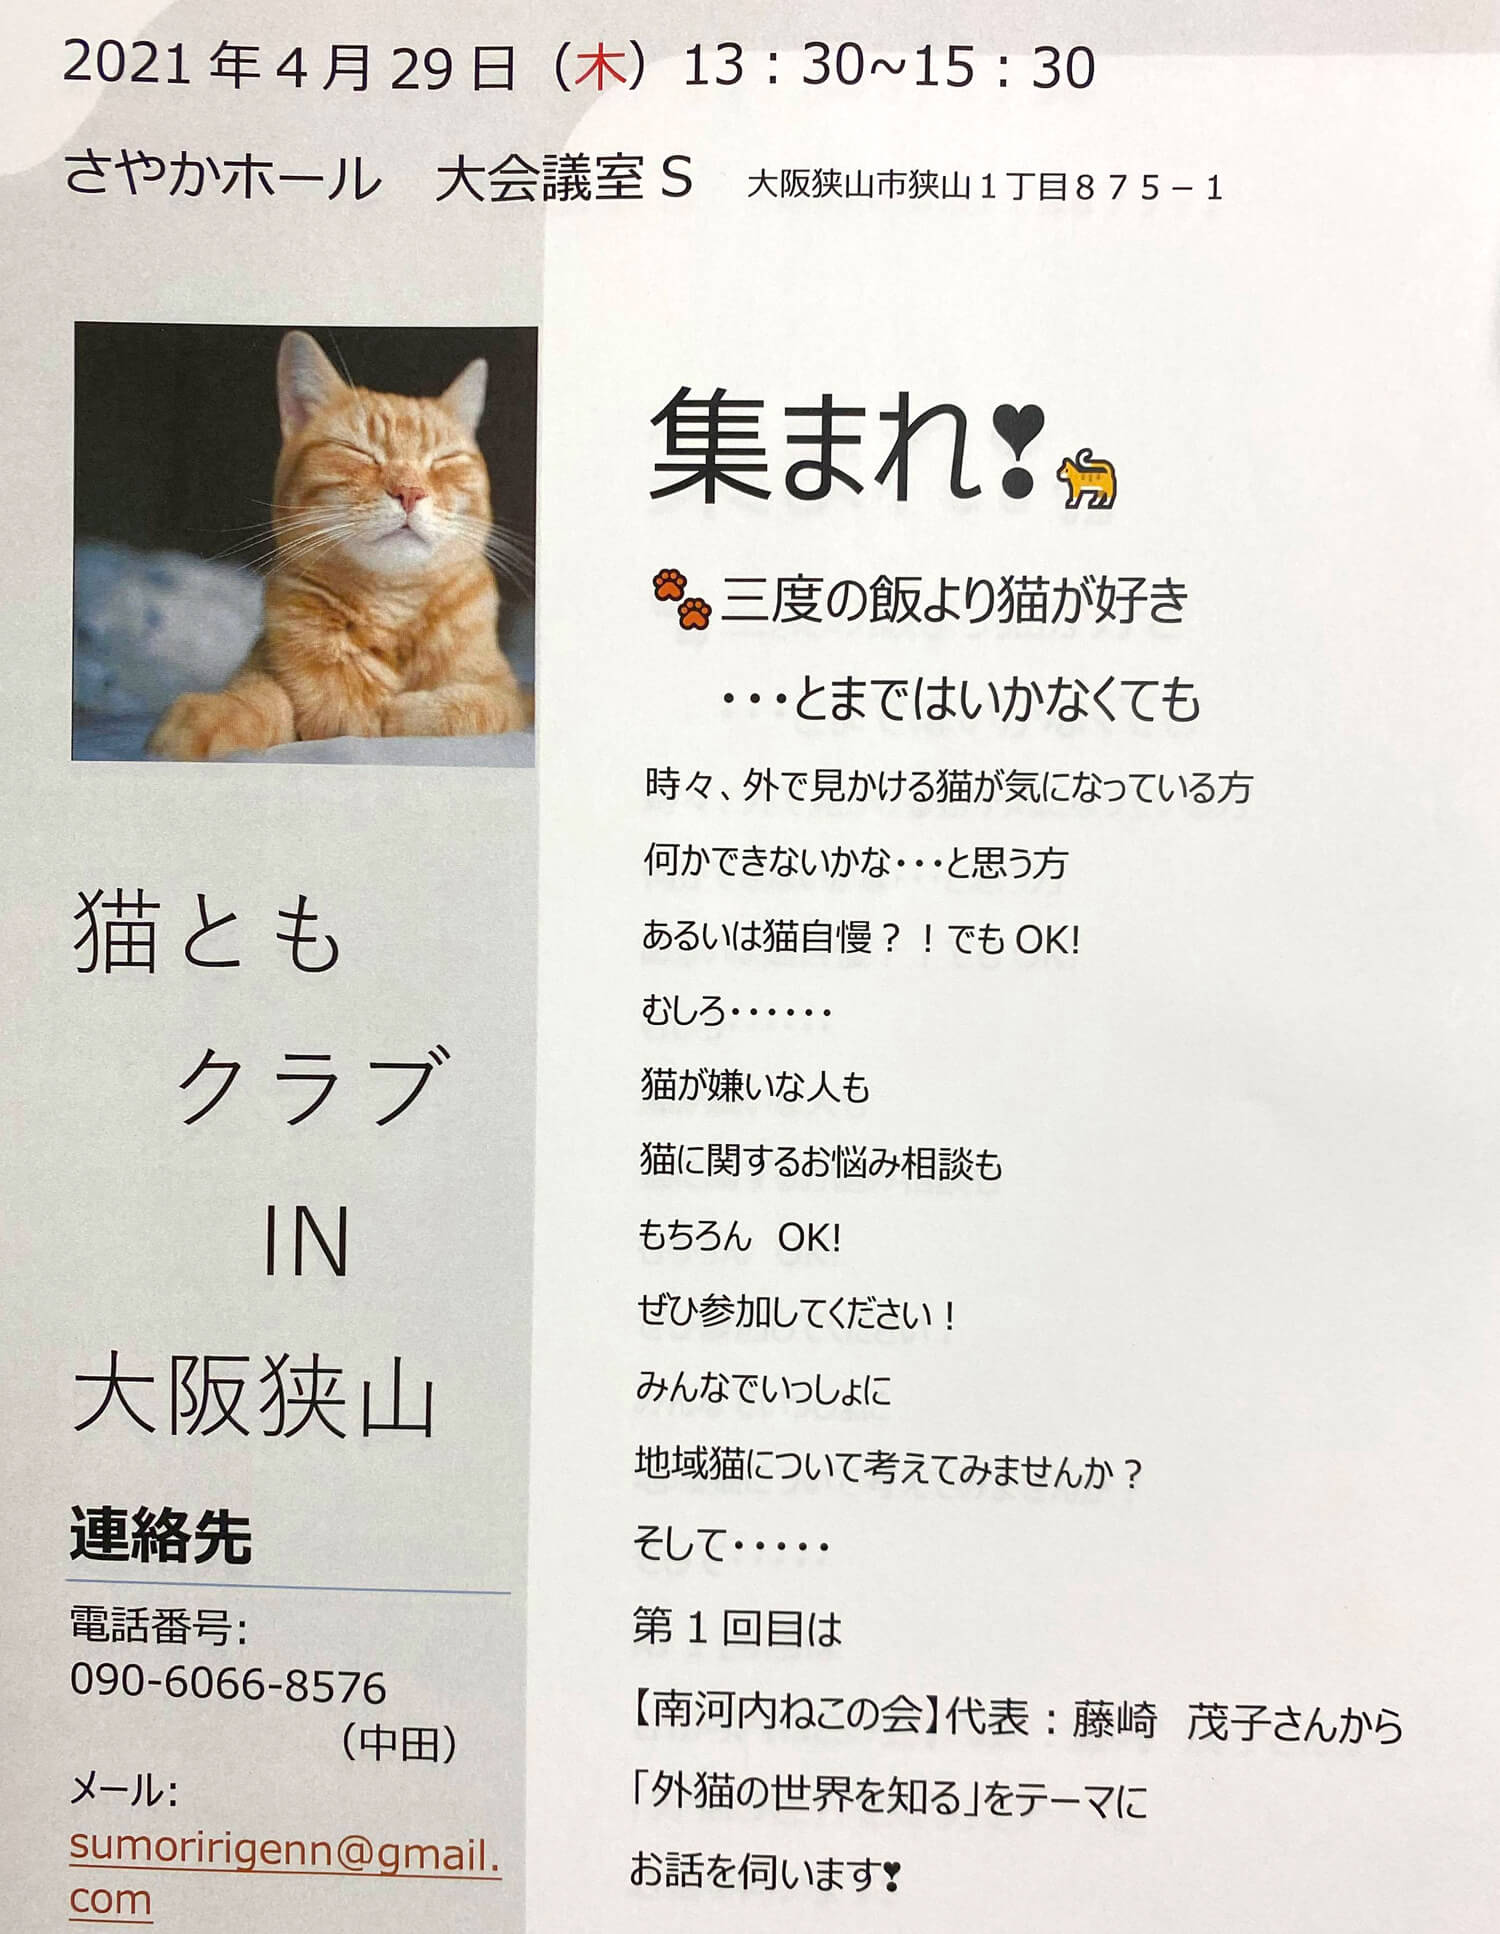 【2021年4月29日】「猫ともクラブ-IN-大阪狭山」が、さやかホールで開催されます